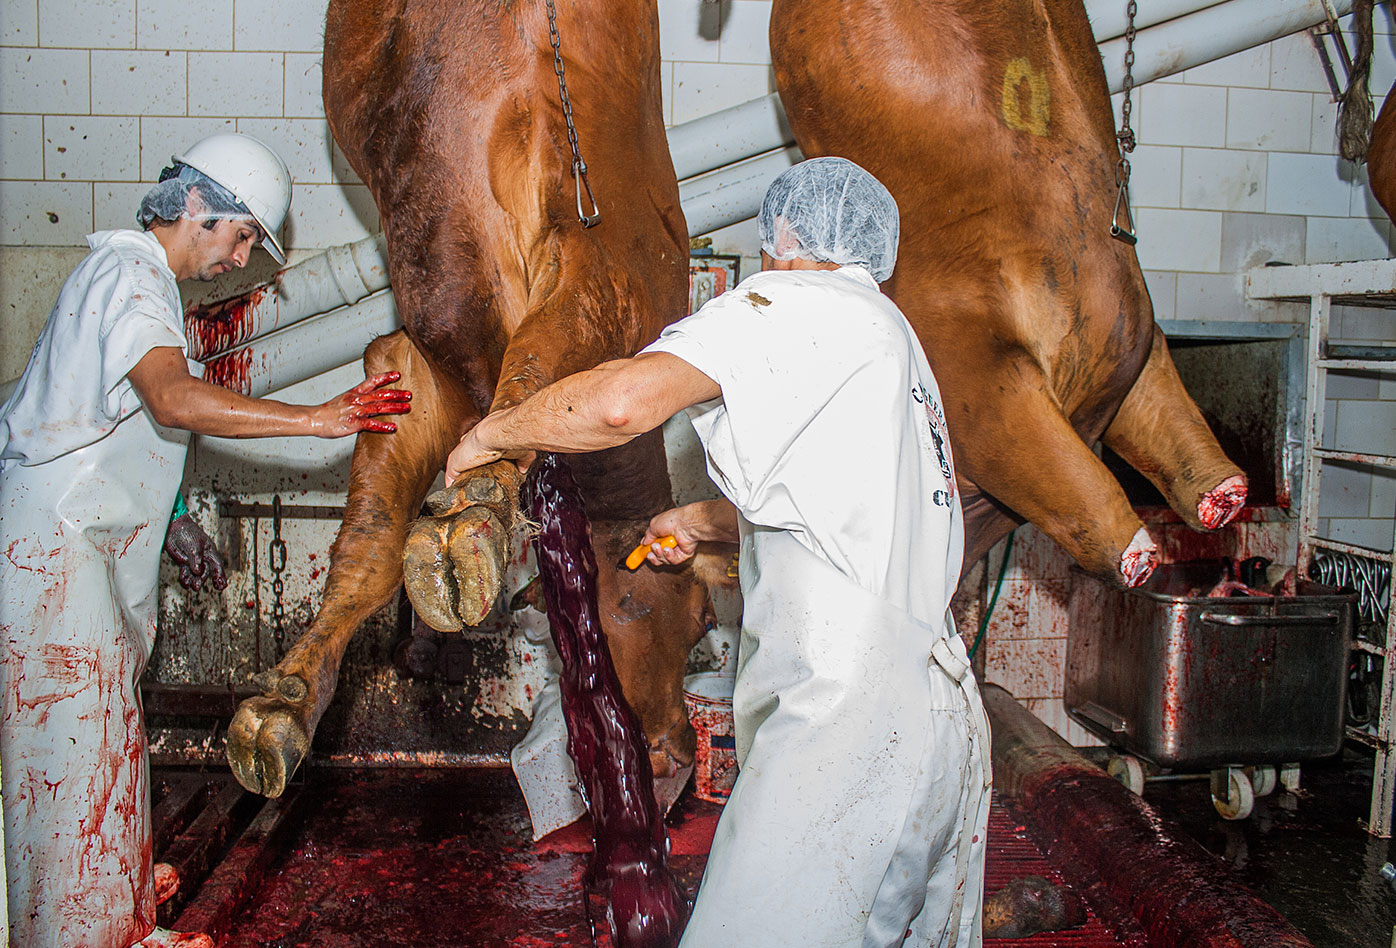 Un trabajador de matadero perfora la garganta de una vaca suspendida mientras otro trabajador ayuda a mantenerla en su sitio・Gabriela Penela・We Animals Media